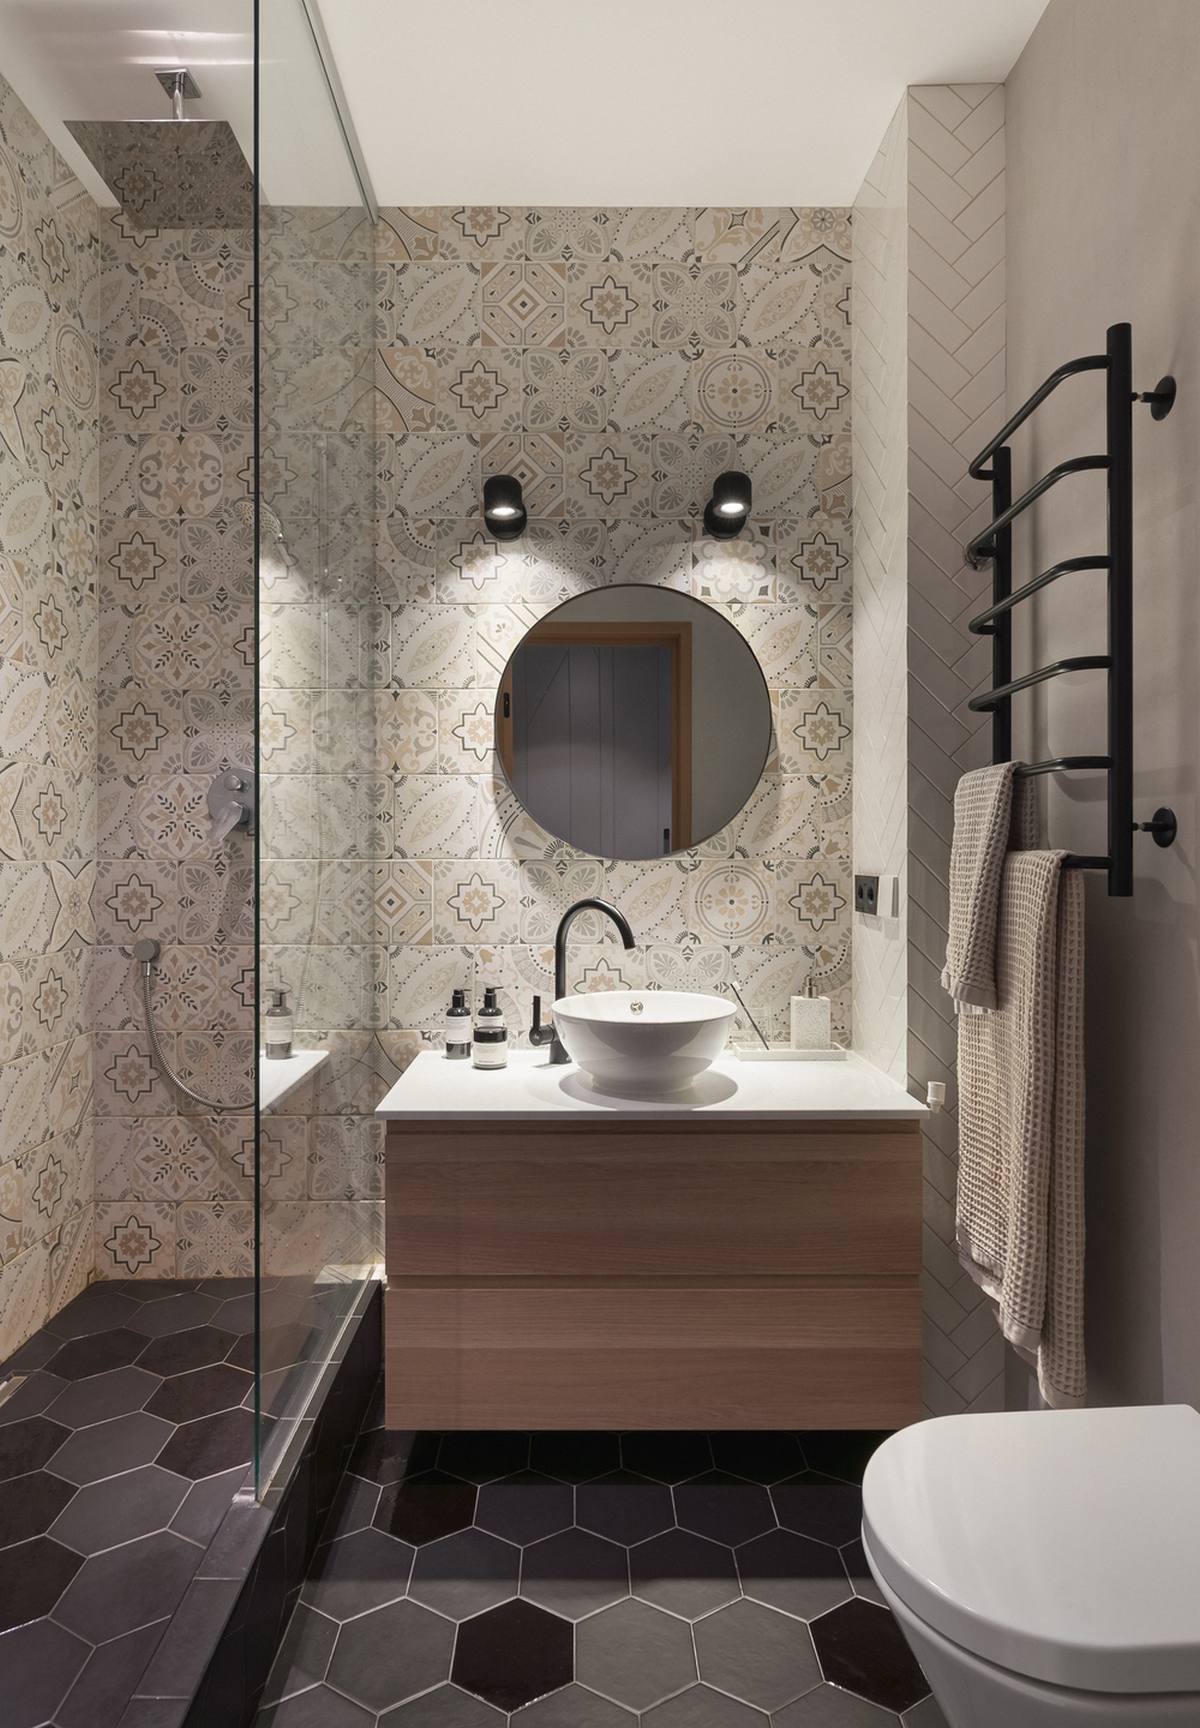 Bề mặt tường phòng tắm ốp gạch bông cổ điển. Tủ kết hợp bồn rửa hiện đại, chiếc thang treo khăn tắm gắn tường cũng như tấm kính trong suốt phân vùng buồng tắm và toilet cho căn phòng được thông thoáng bất chấp diện tích nhỏ hẹp.